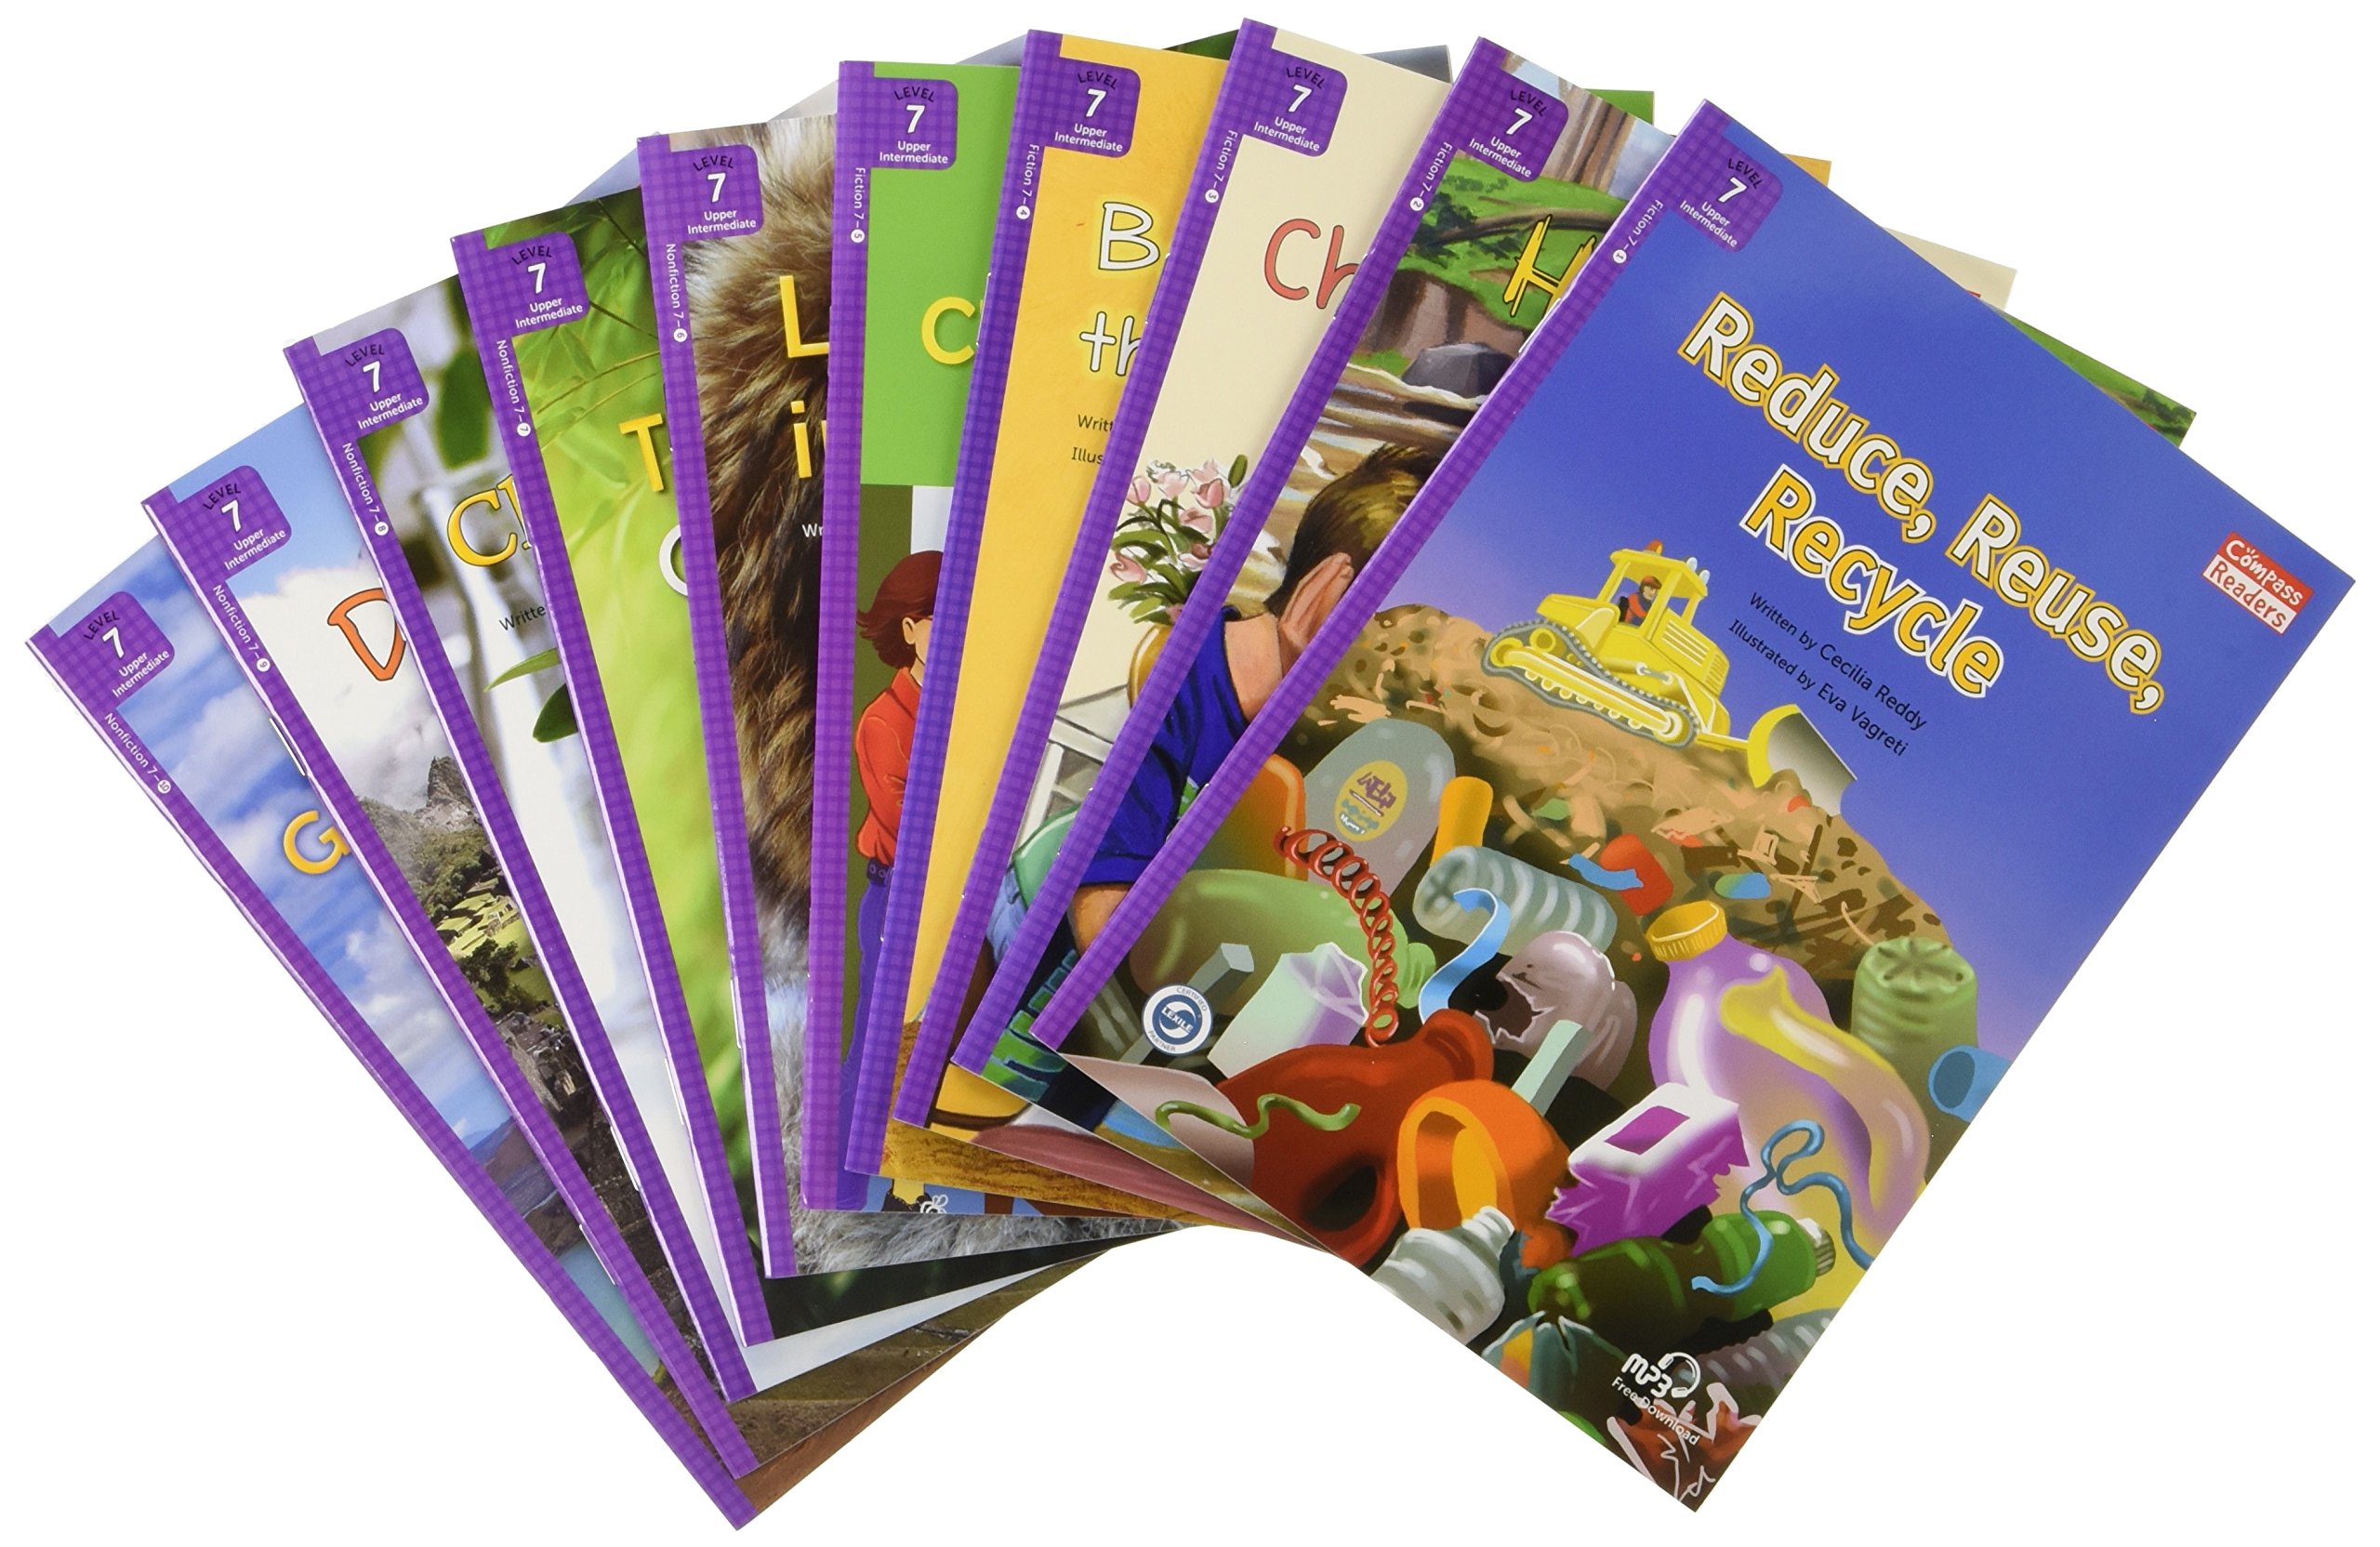 Tuyển tập sách Compass Reading Level 7 trọn bộ 10 quyển có audio mp3 miễn phí nghe kèm sách giúp bé học tiếng Anh